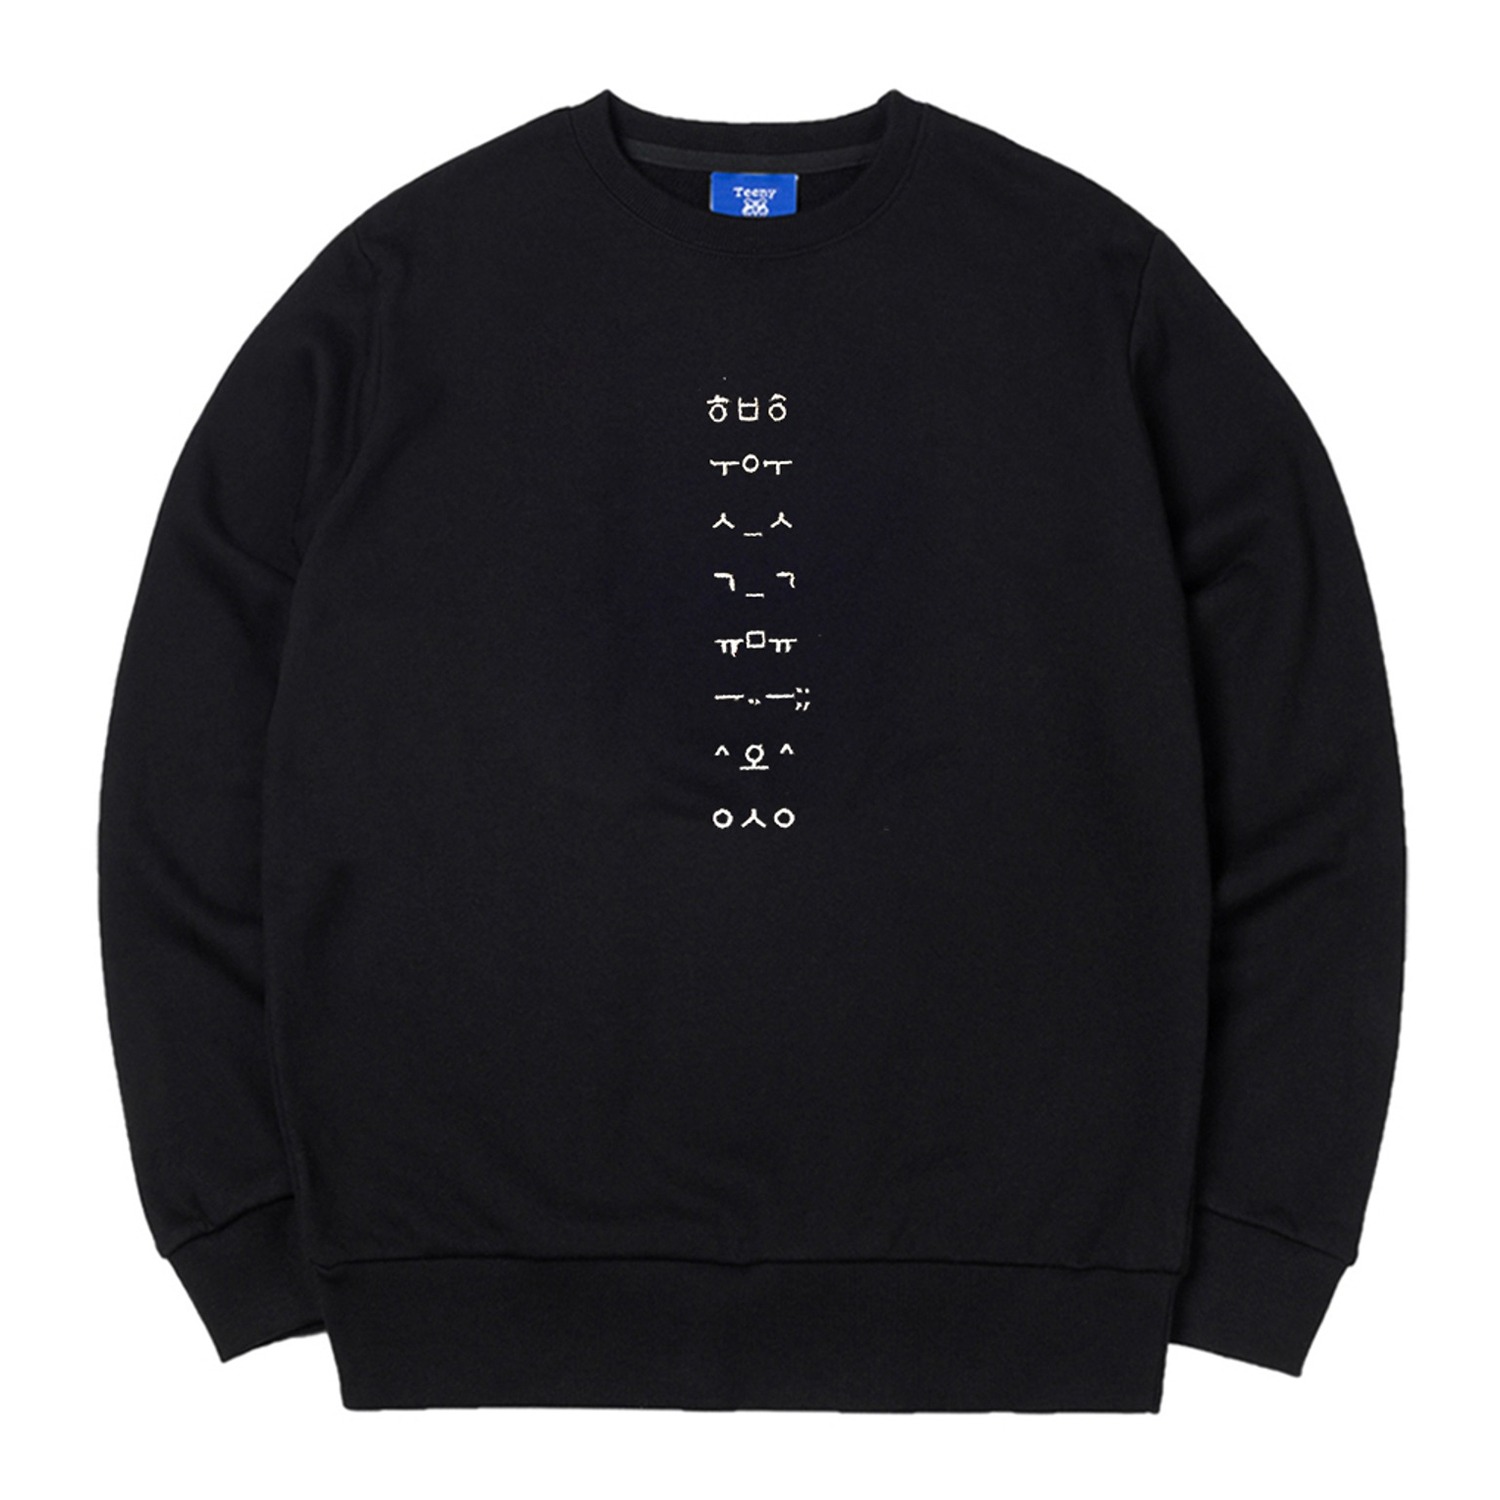 한글 이모티콘 맨투맨 블랙  Korean Face Emoticon Text Sweatshirt Black